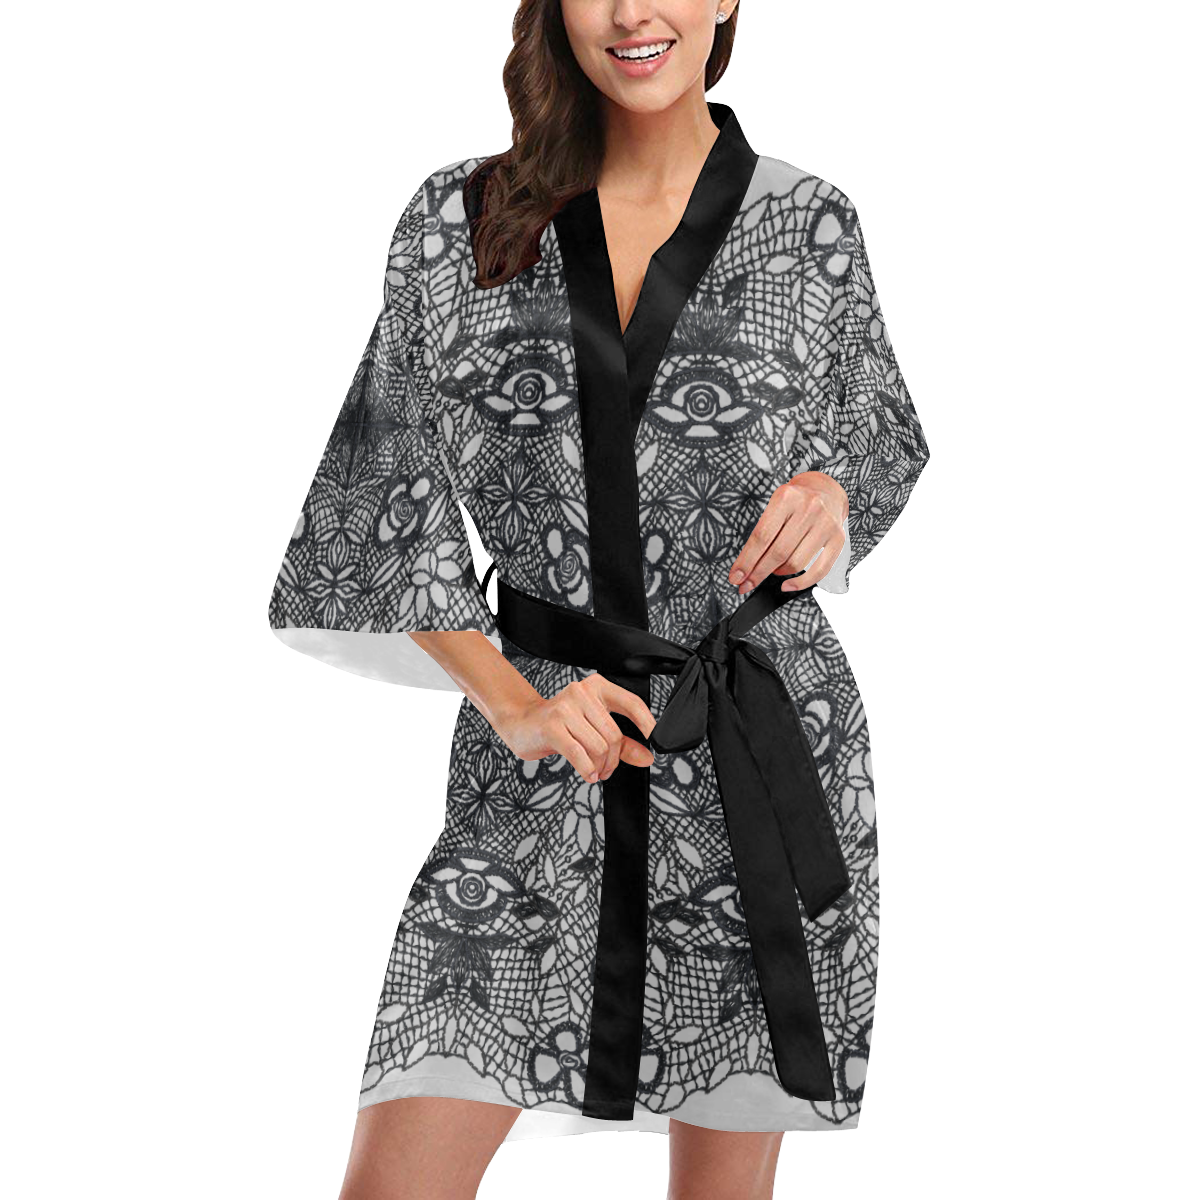 Black Crocheted Lace Mandala Pattern on gray Kimono Robe